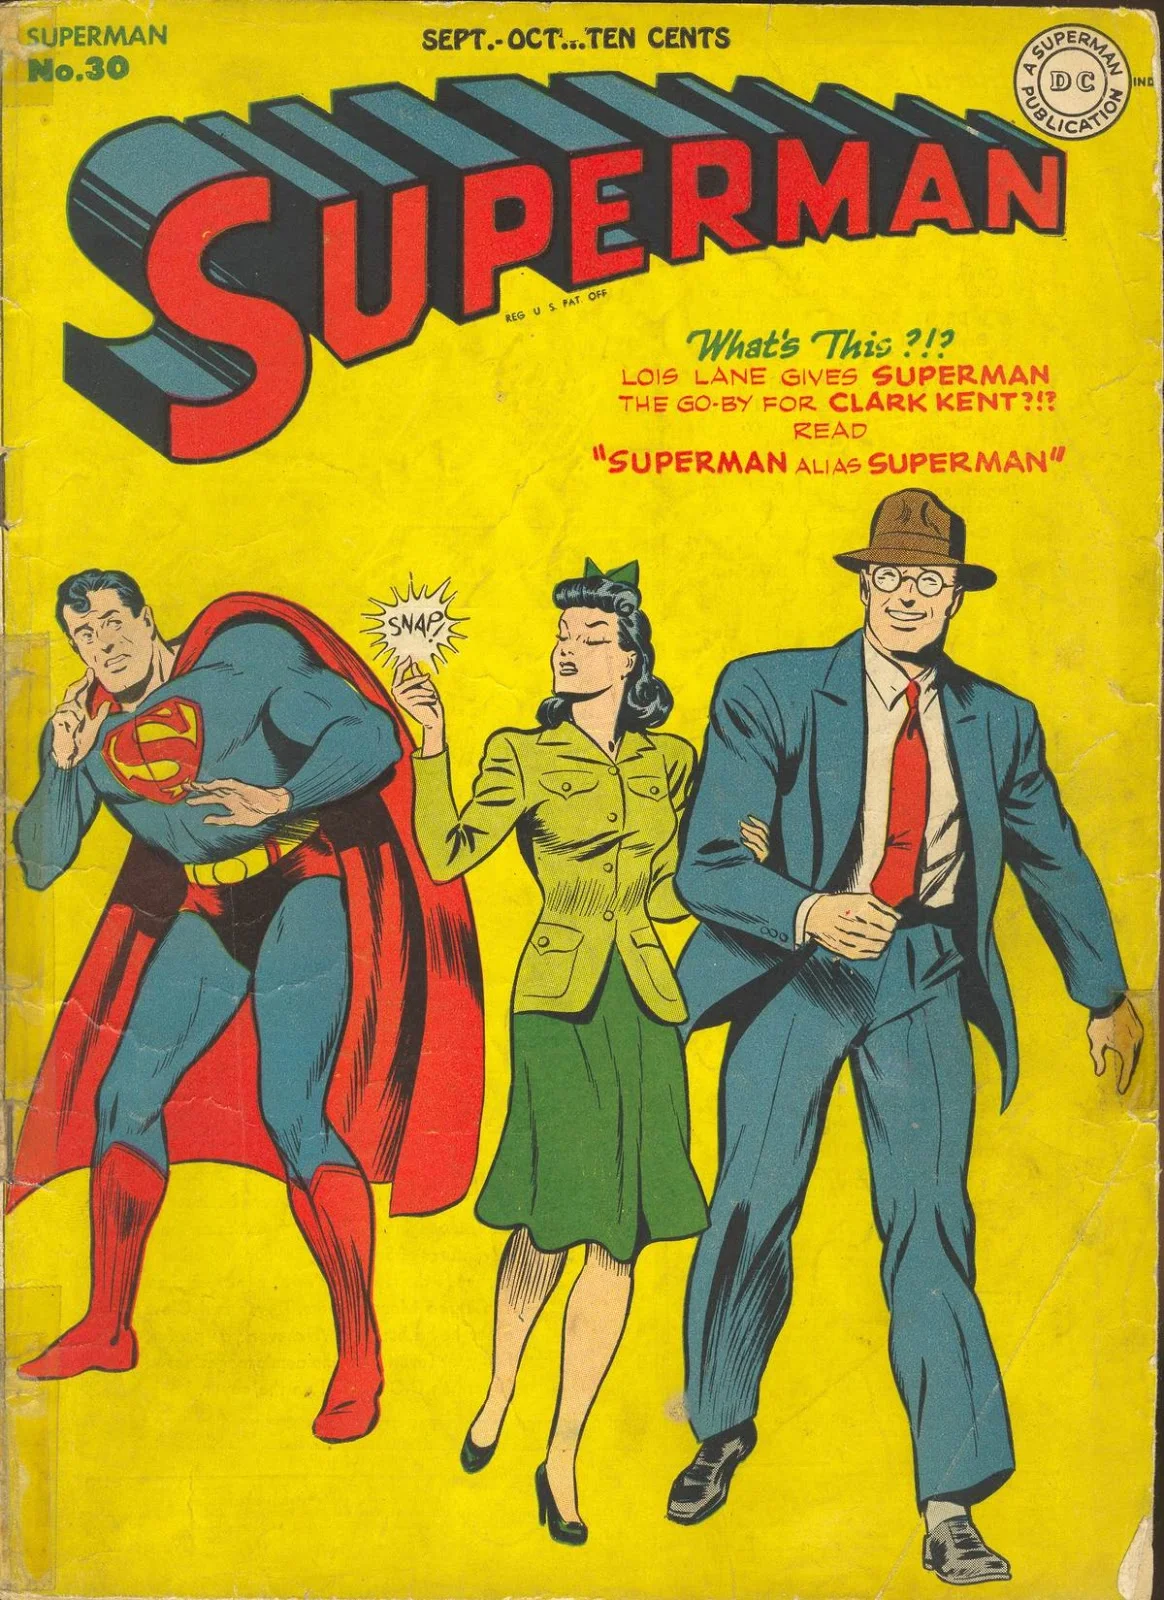 История Супермена и эволюция его образа в комиксах - фото 10